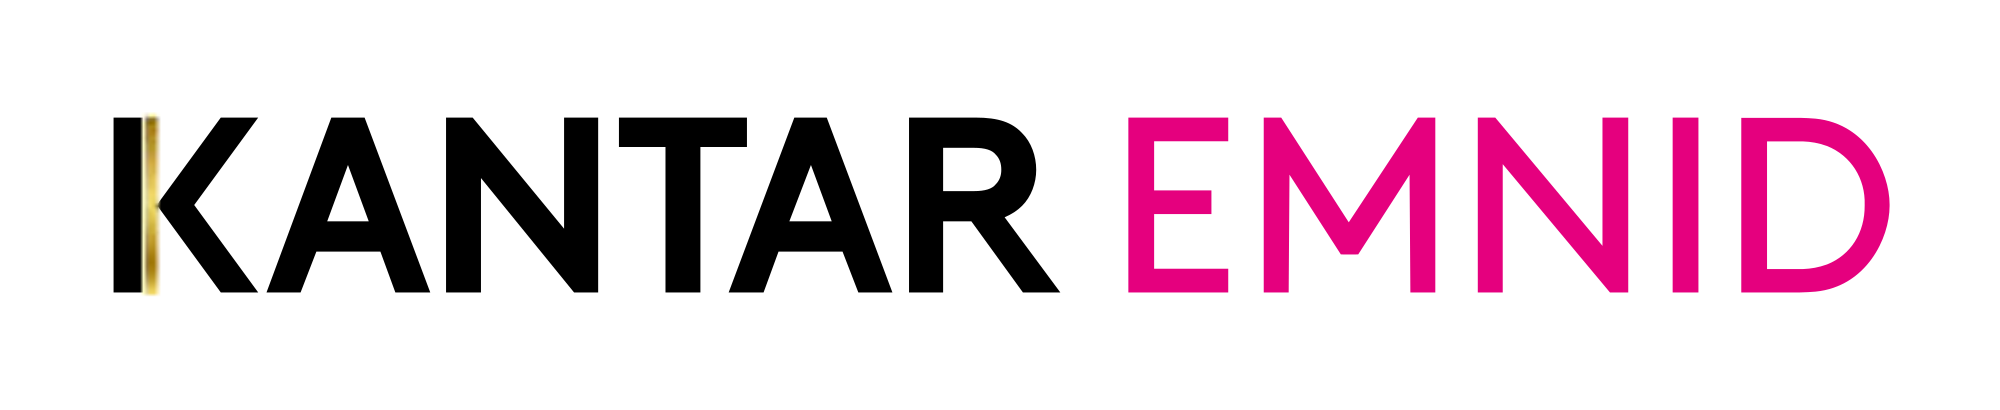 Kantar Emnid Logo